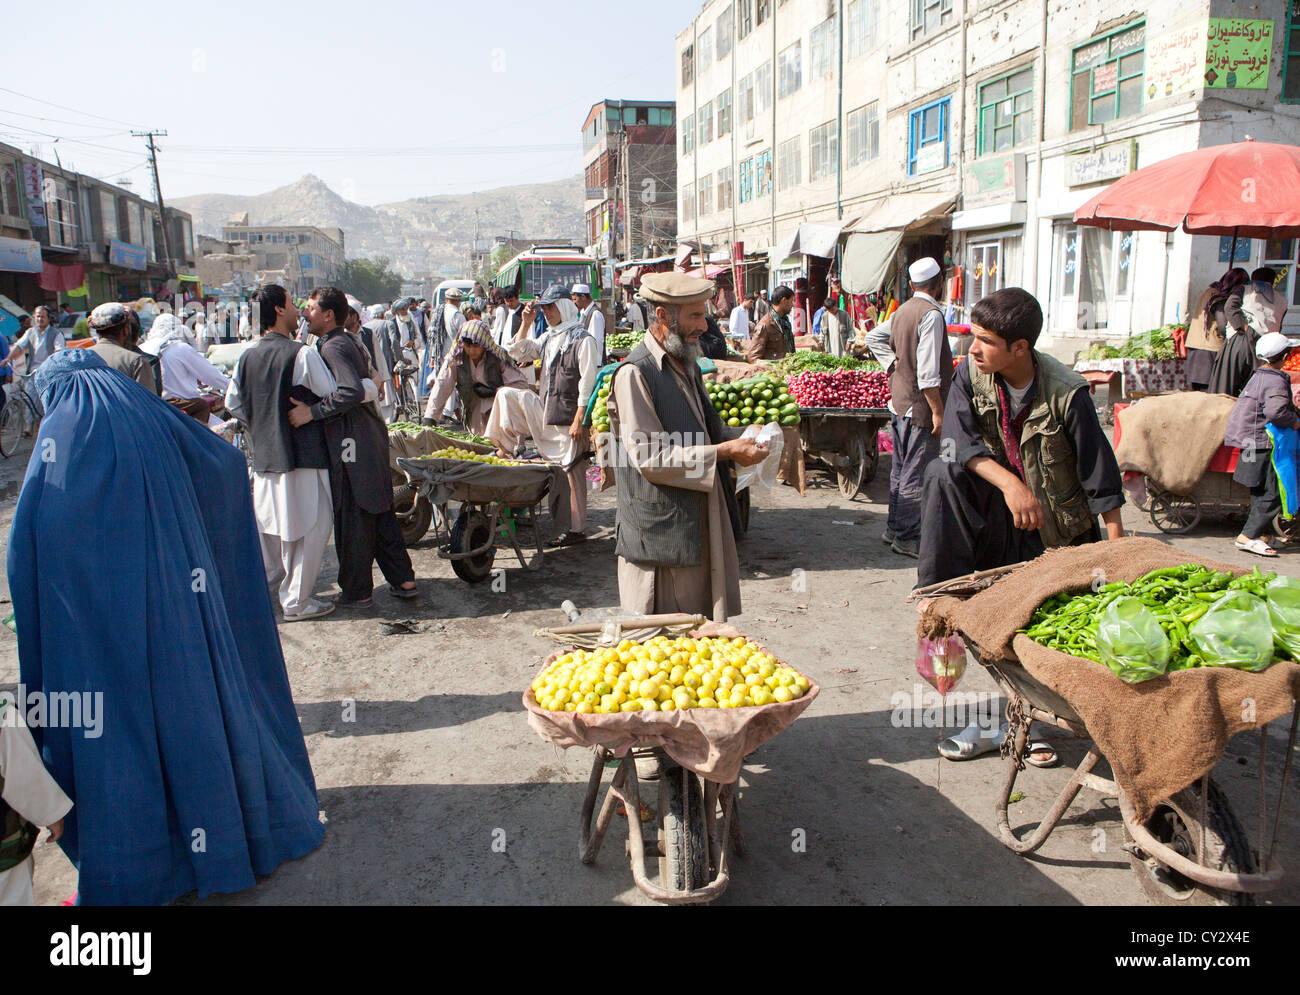 shopkeeper in kabul, Afghanistan Stock Photo